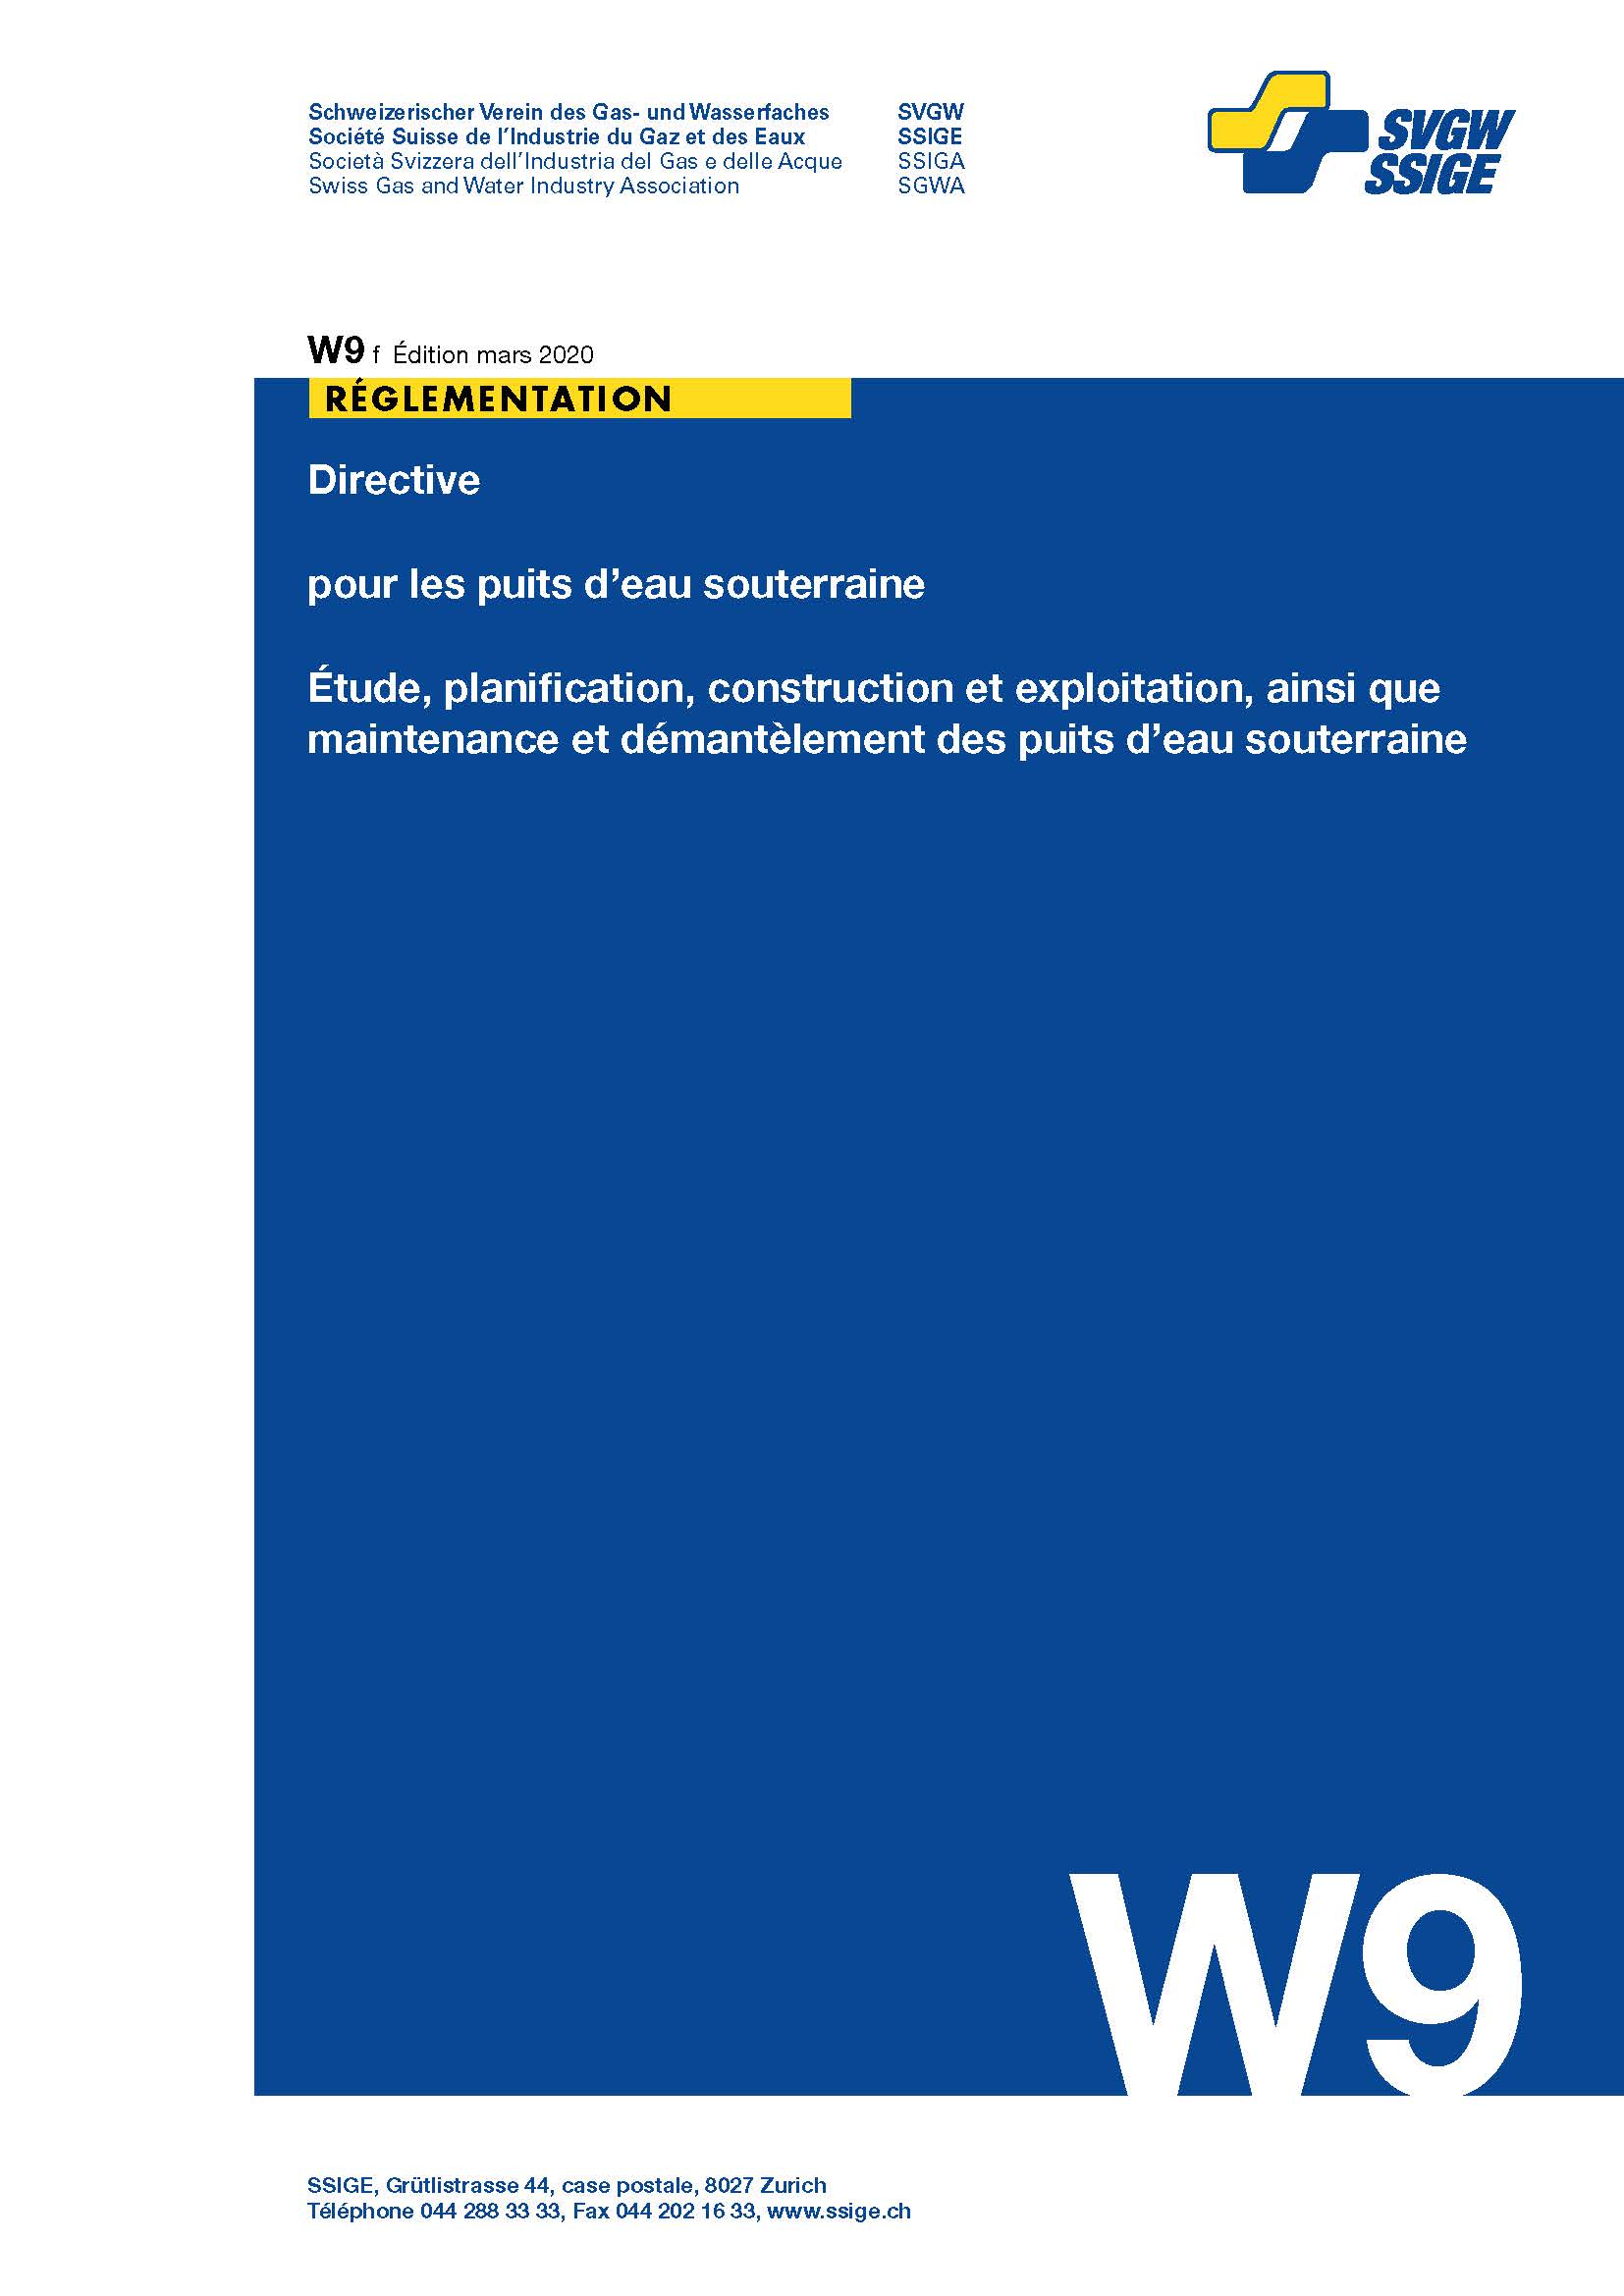 W9 f Directive pour les puits d'eau souterraine; Étude, planification, construction et exploitation, ainsi que maintenance et démantèlement des puits d'eau souterraine